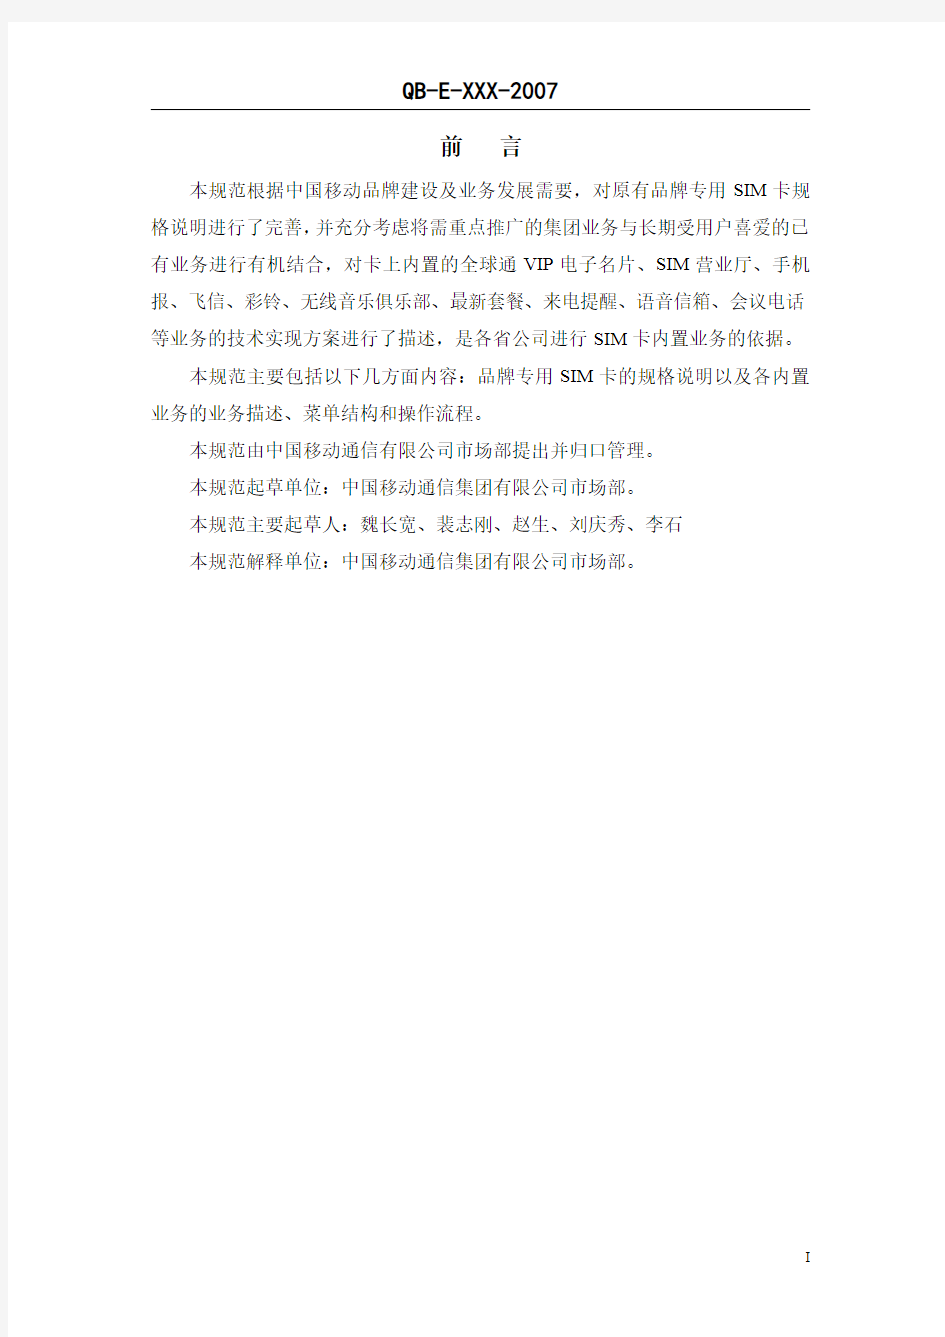 中国移动品牌专用SIM卡规格说明及内置